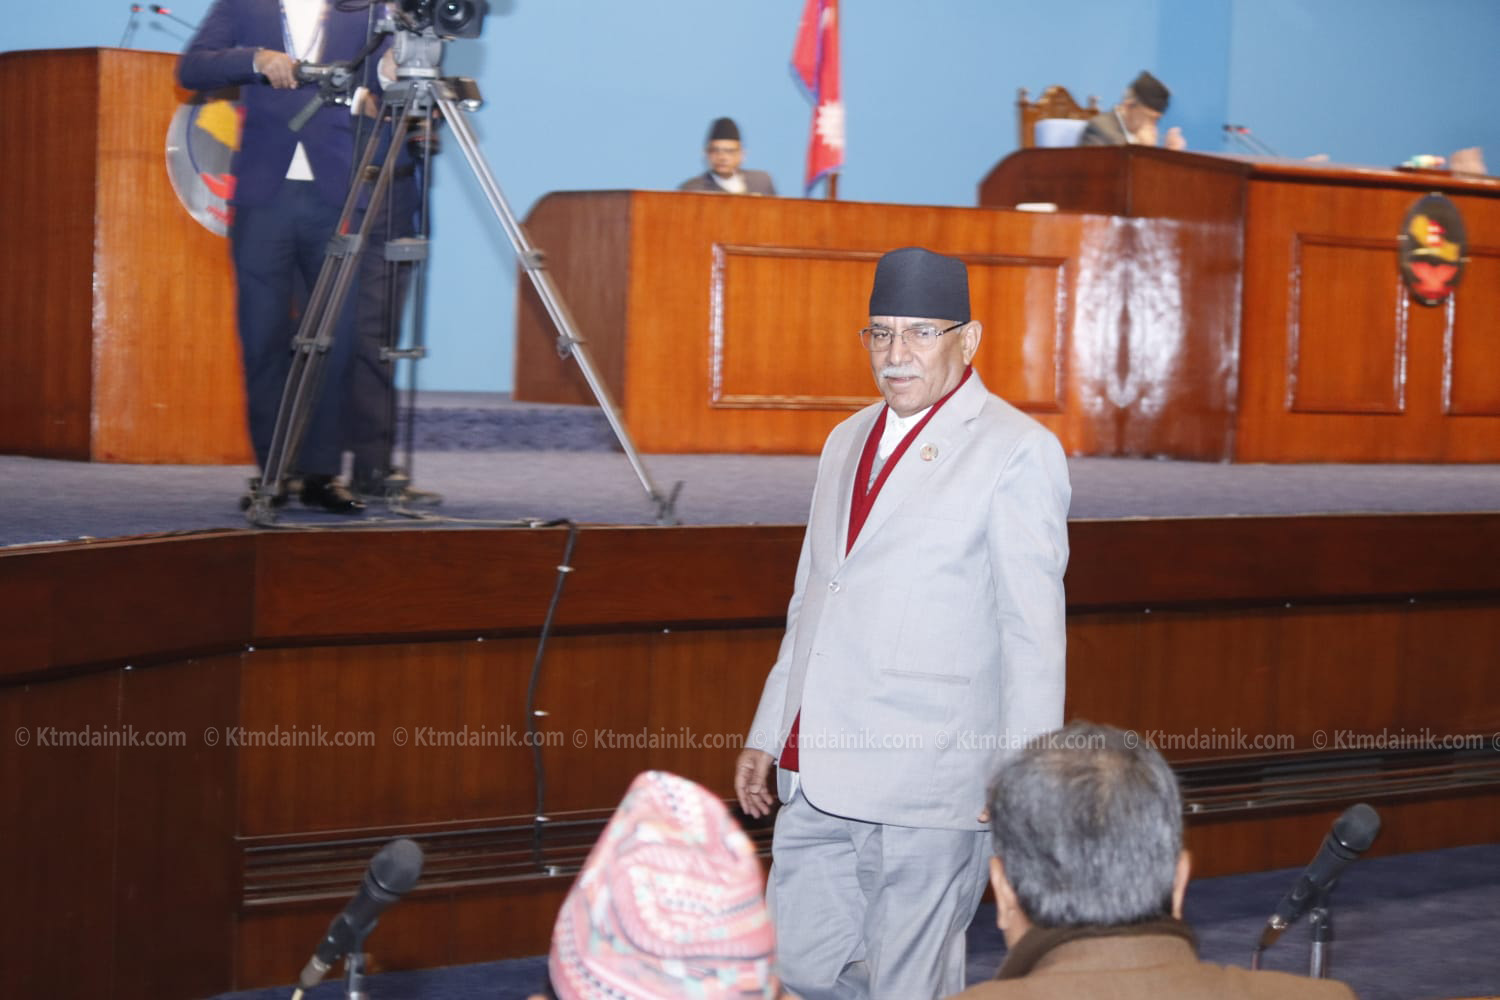 सिङ्गै संसद् विश्वासको मतमा उभिन्छ : प्रधानमन्त्री